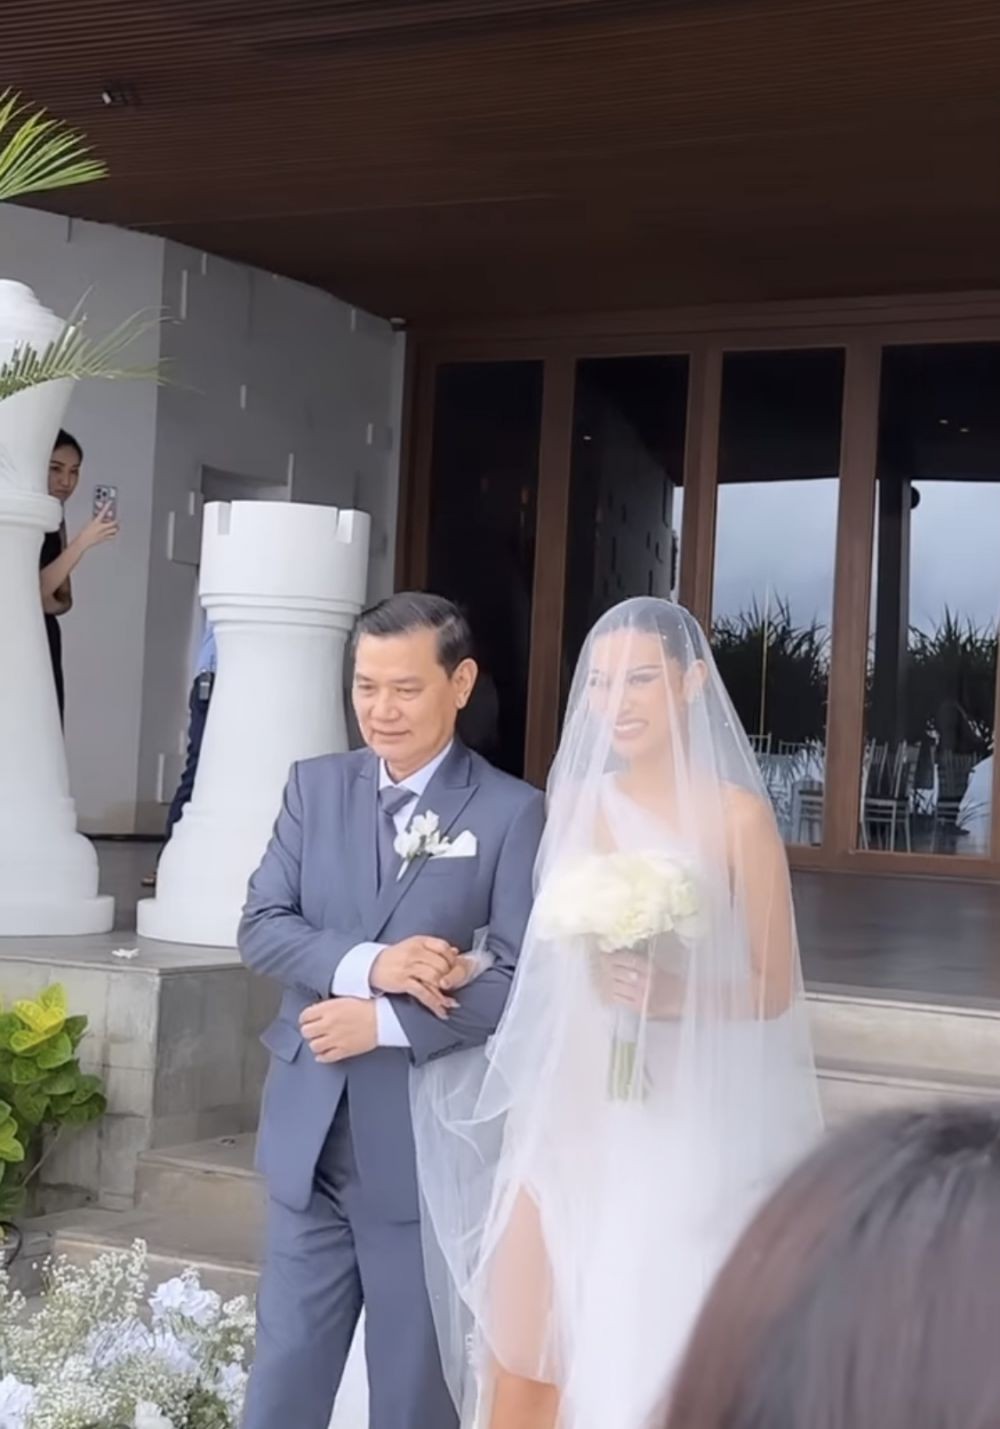 Dipersunting pria bule, ini 11 momen pernikahan Patricia Gouw yang digelar intim di Bali